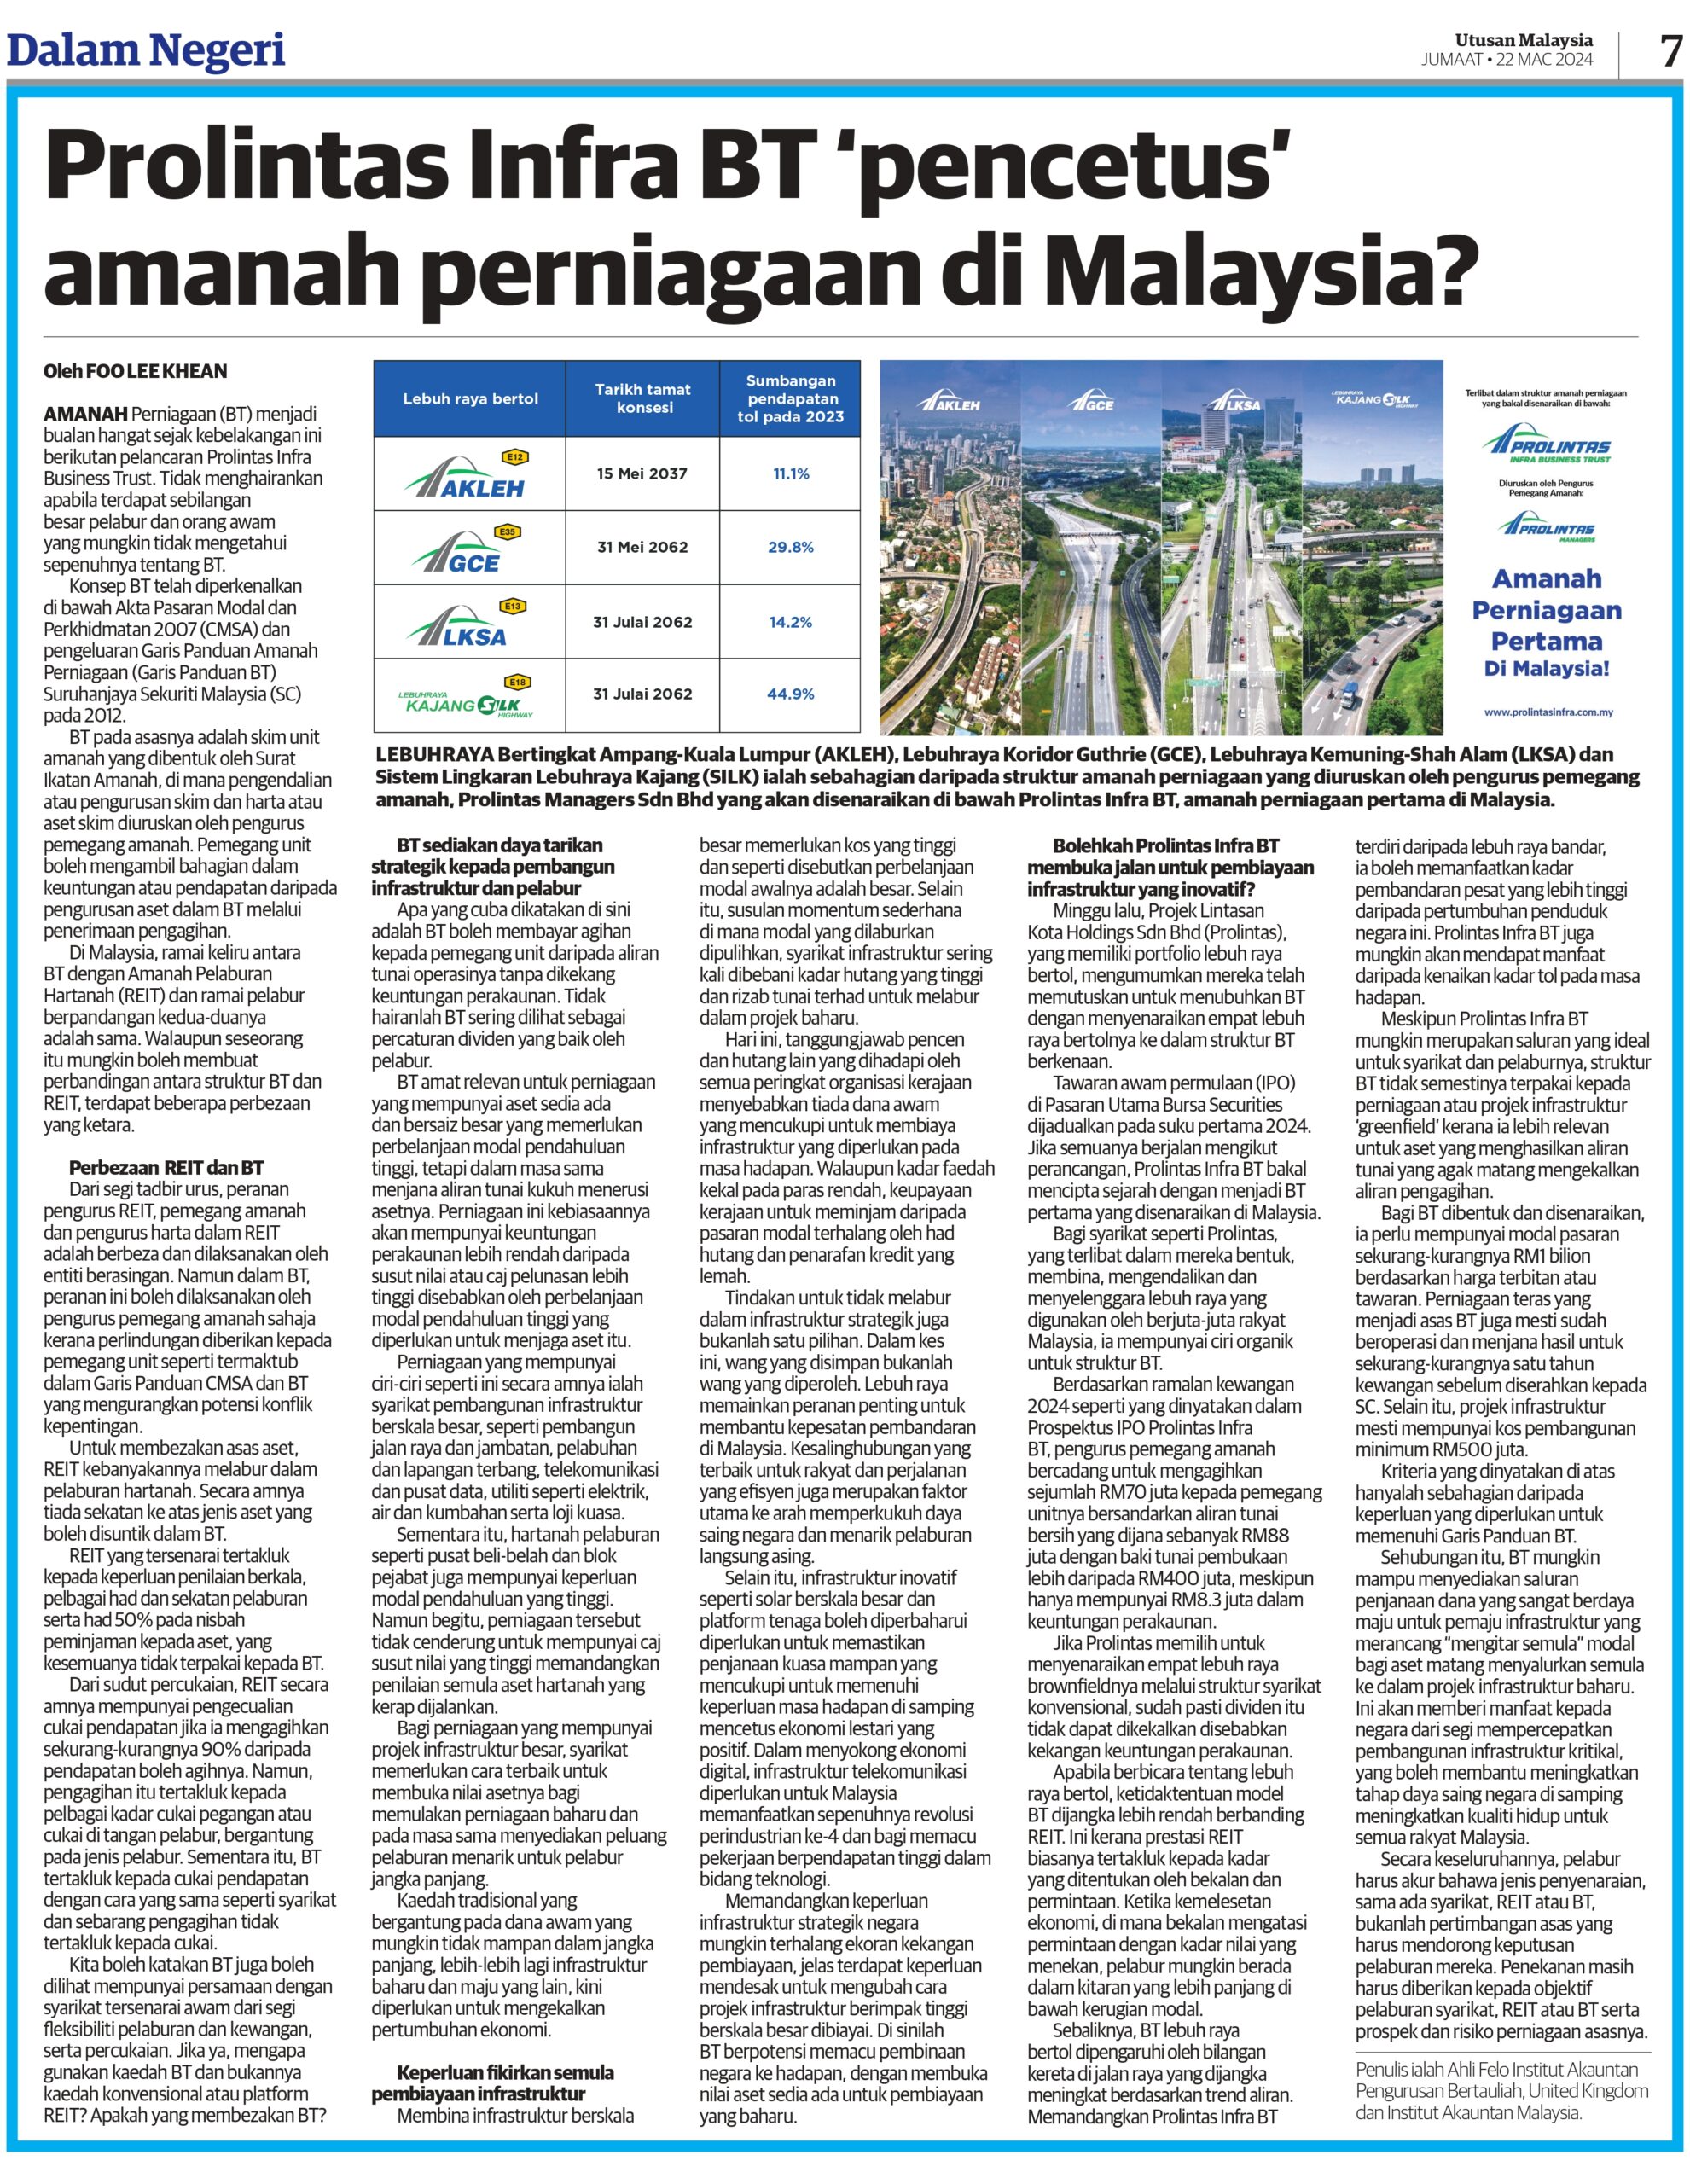 PROLINTAS INFRA BT ‘PENCETUS’ AMANAH PERNIAGAAN DI MALAYSIA